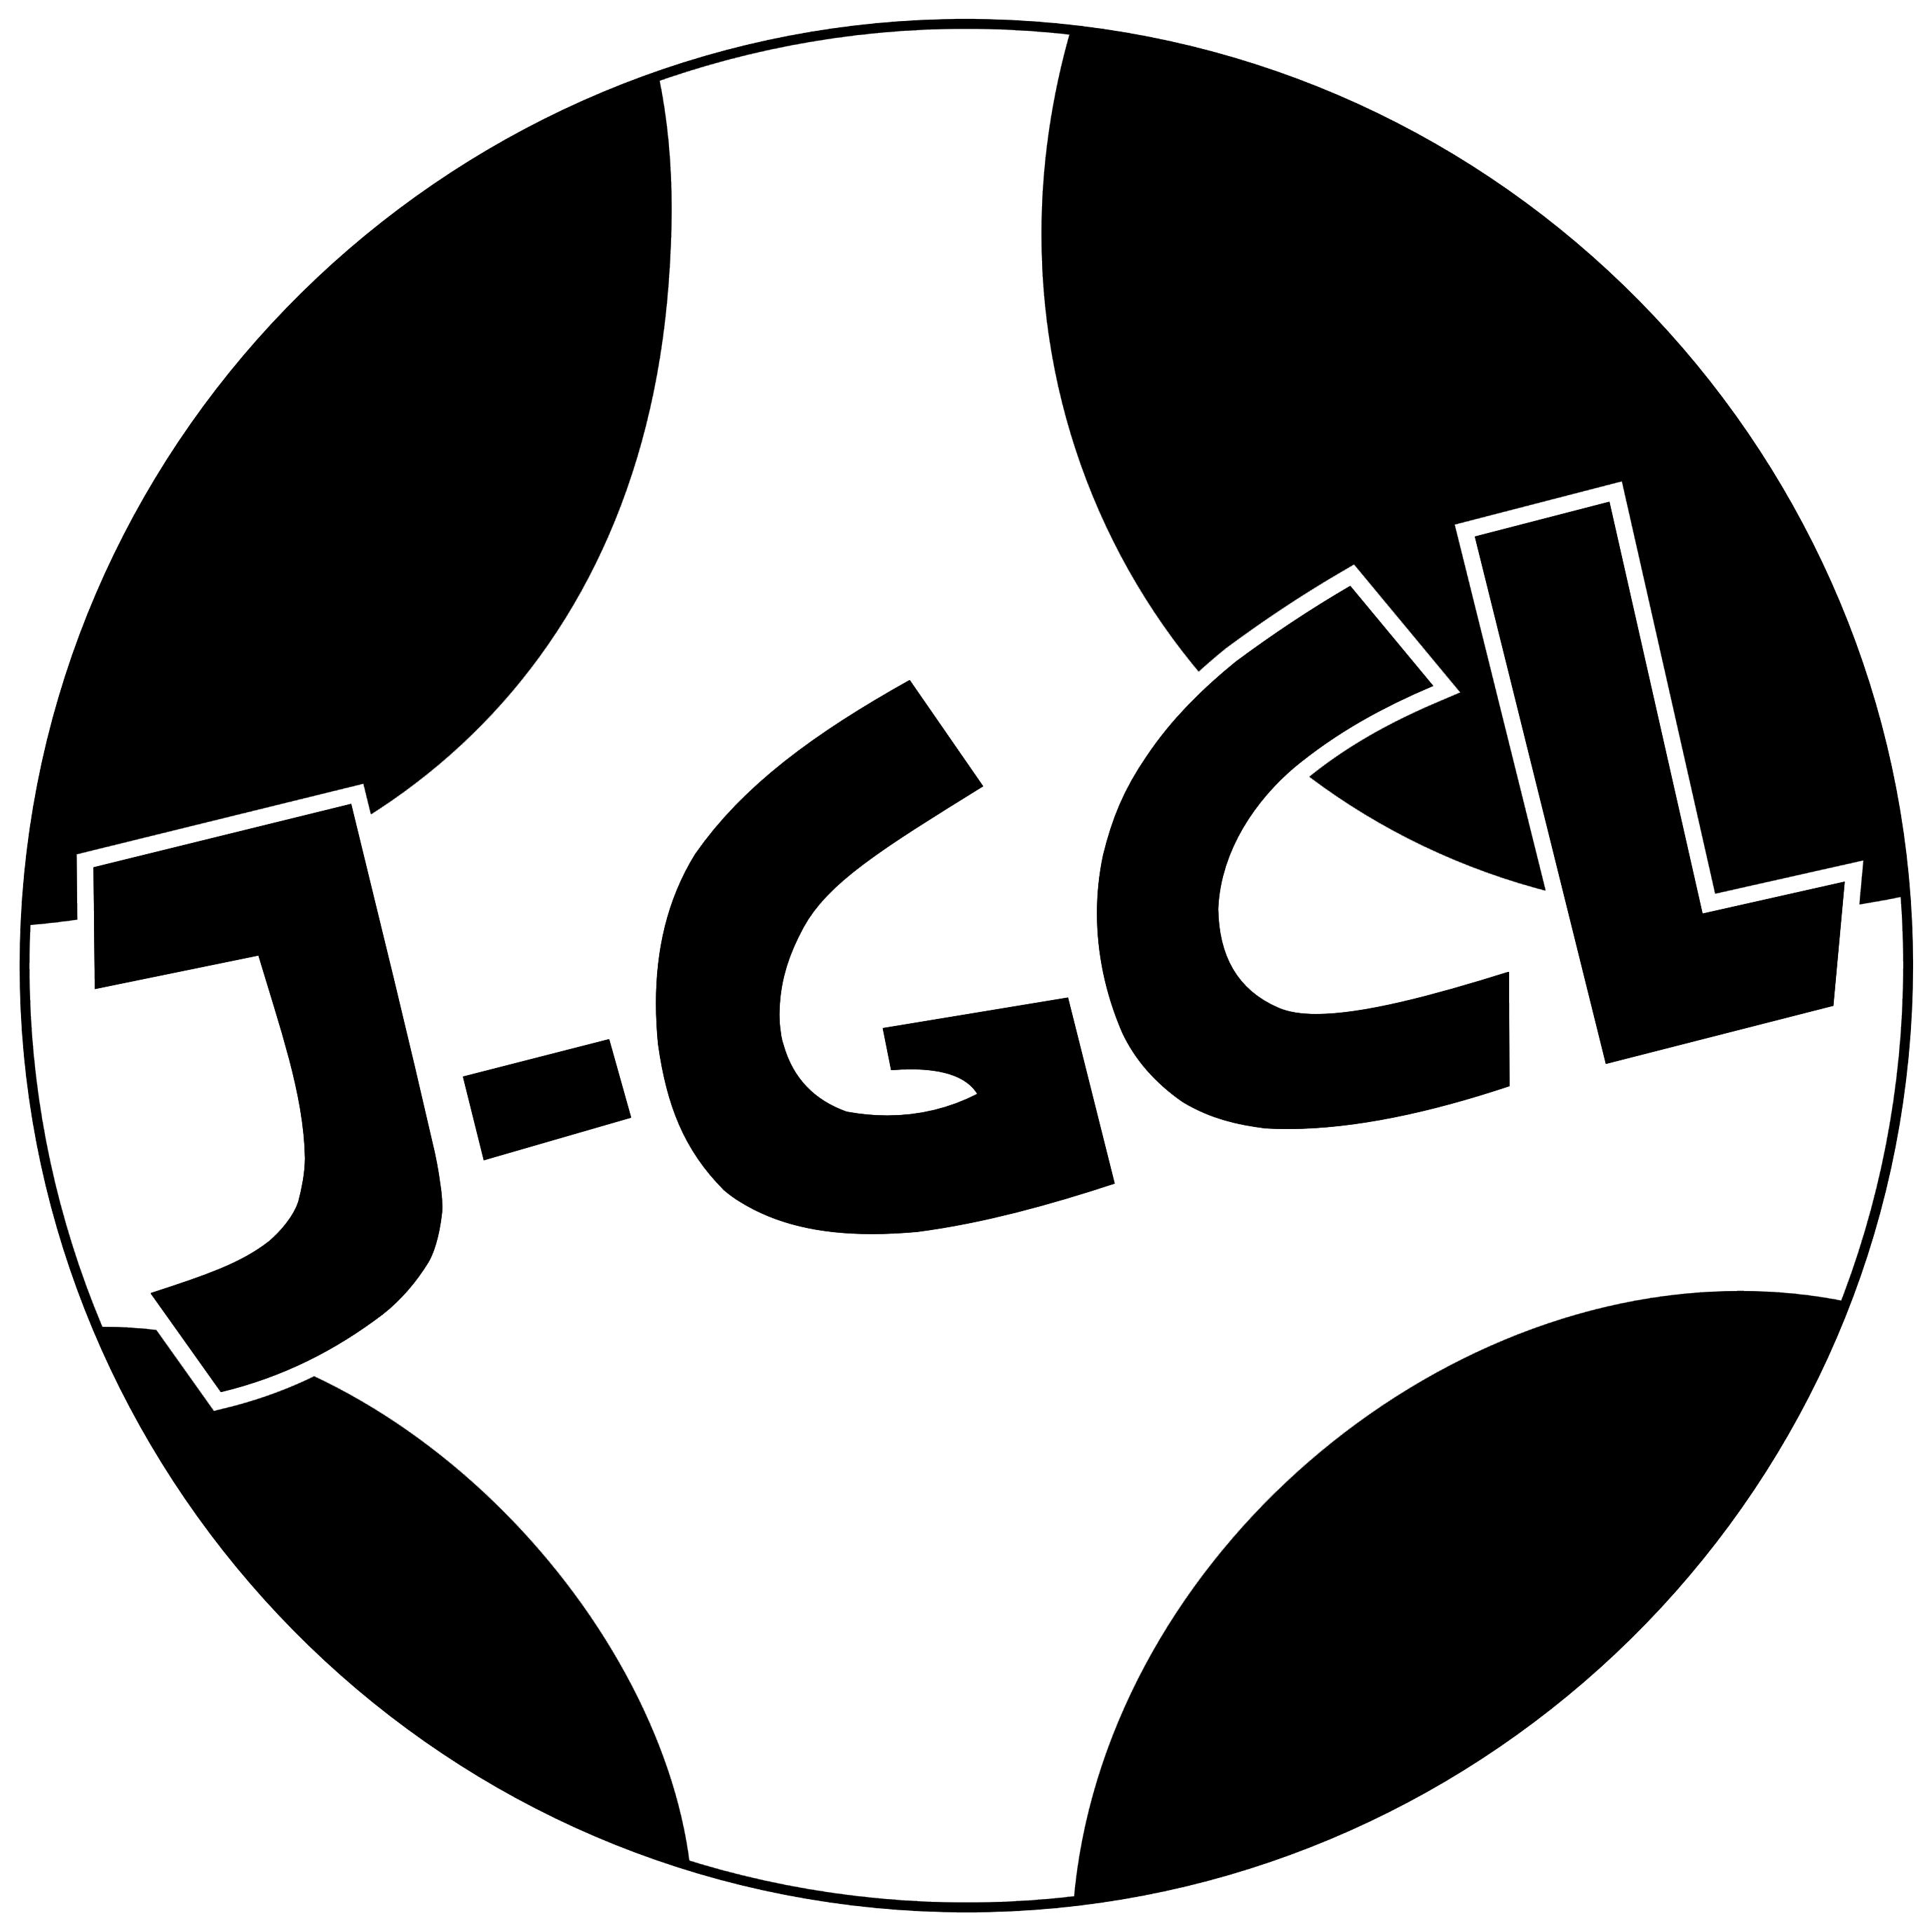 J-GCL